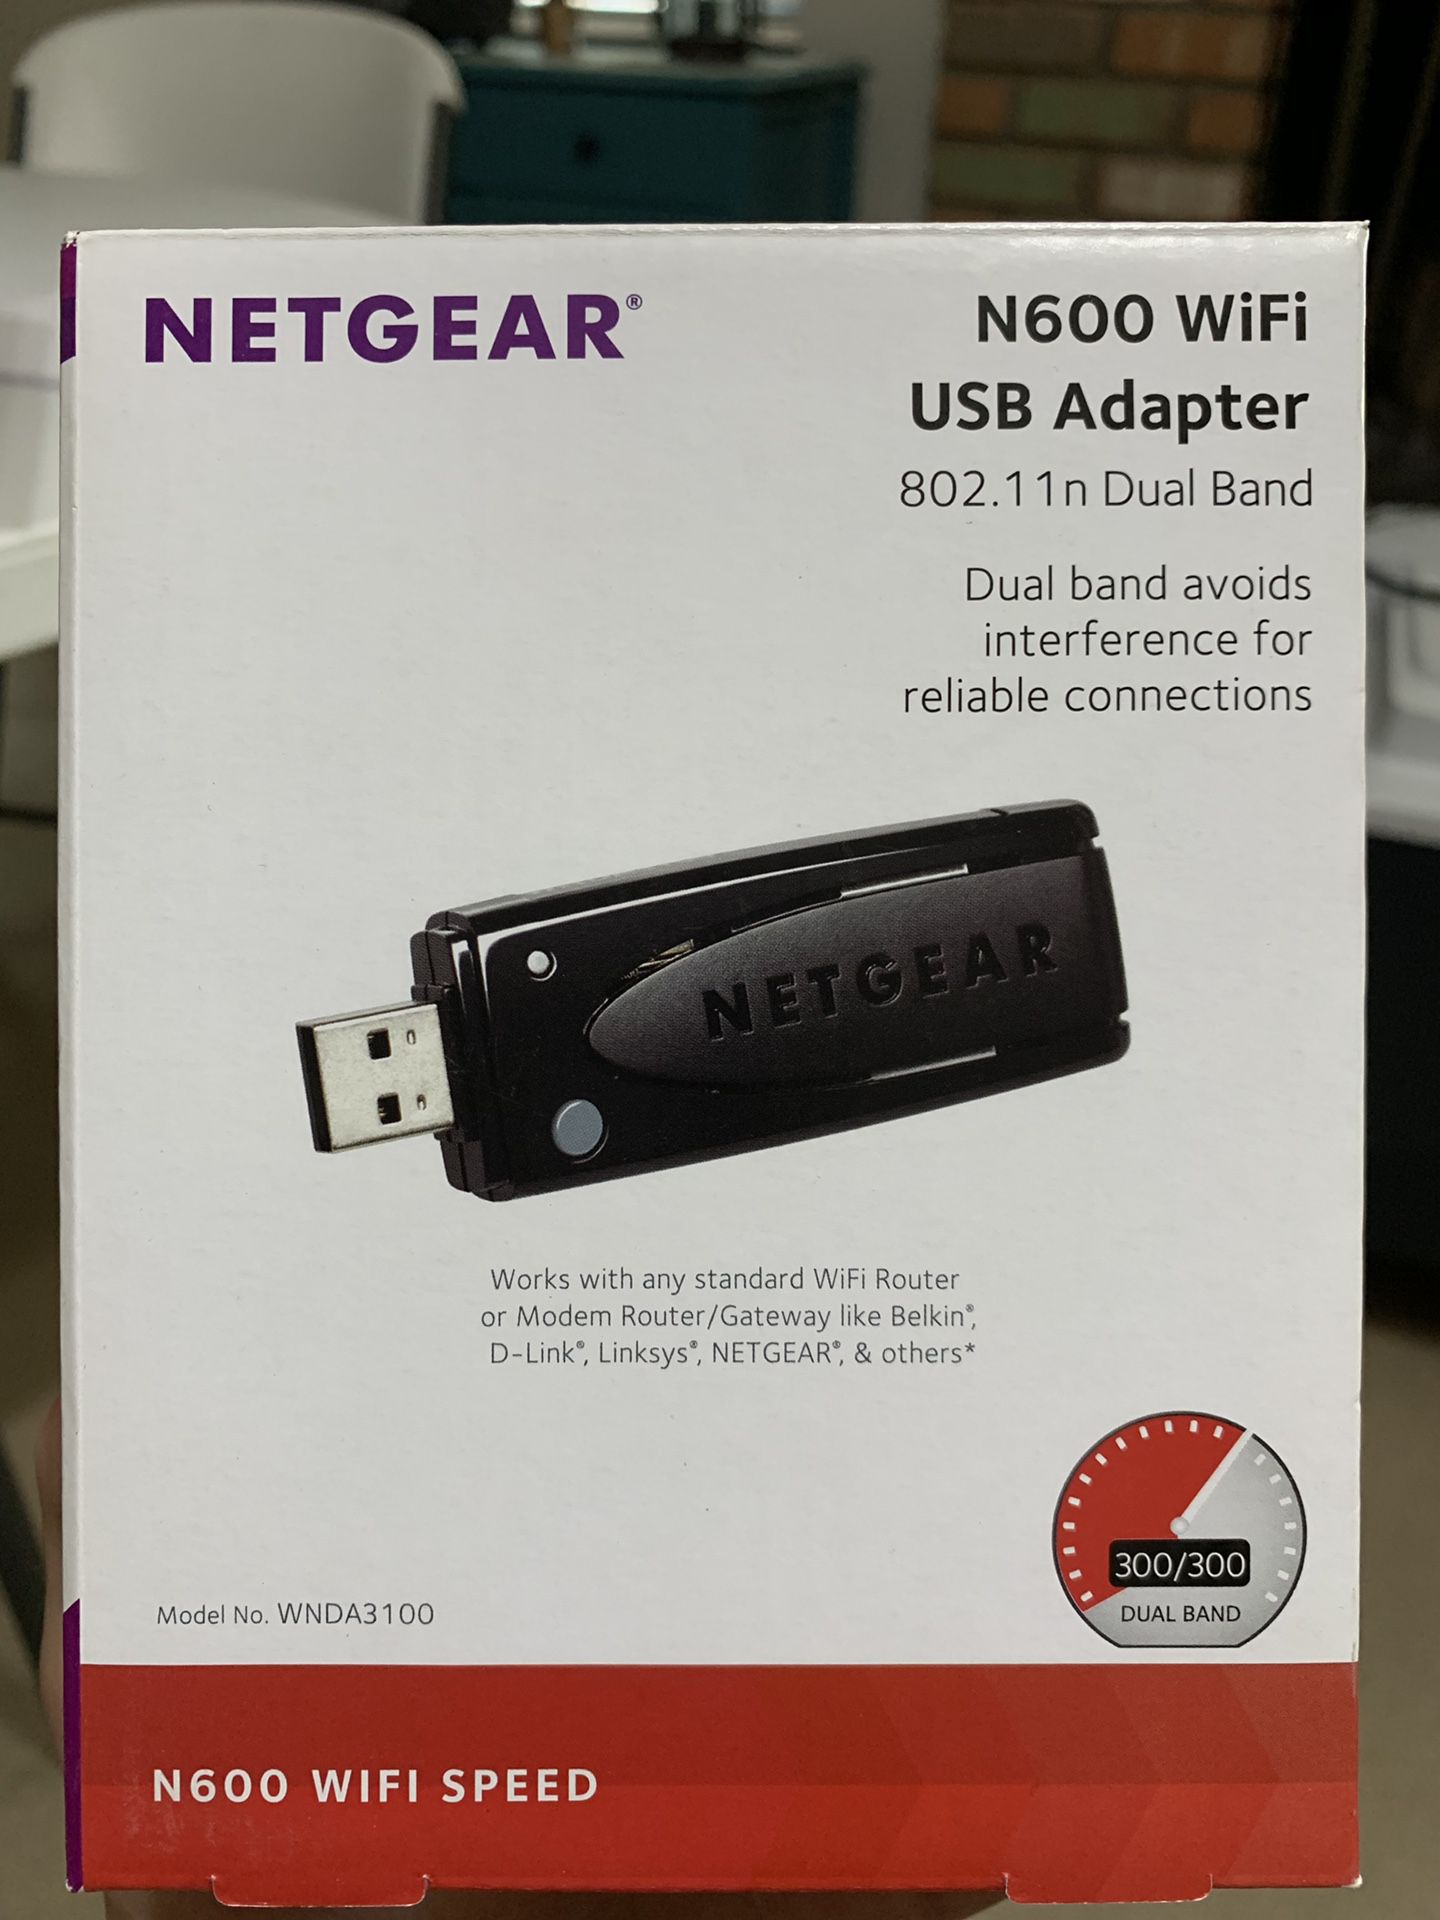 NETGEAR N600 WiFi USB Adapter